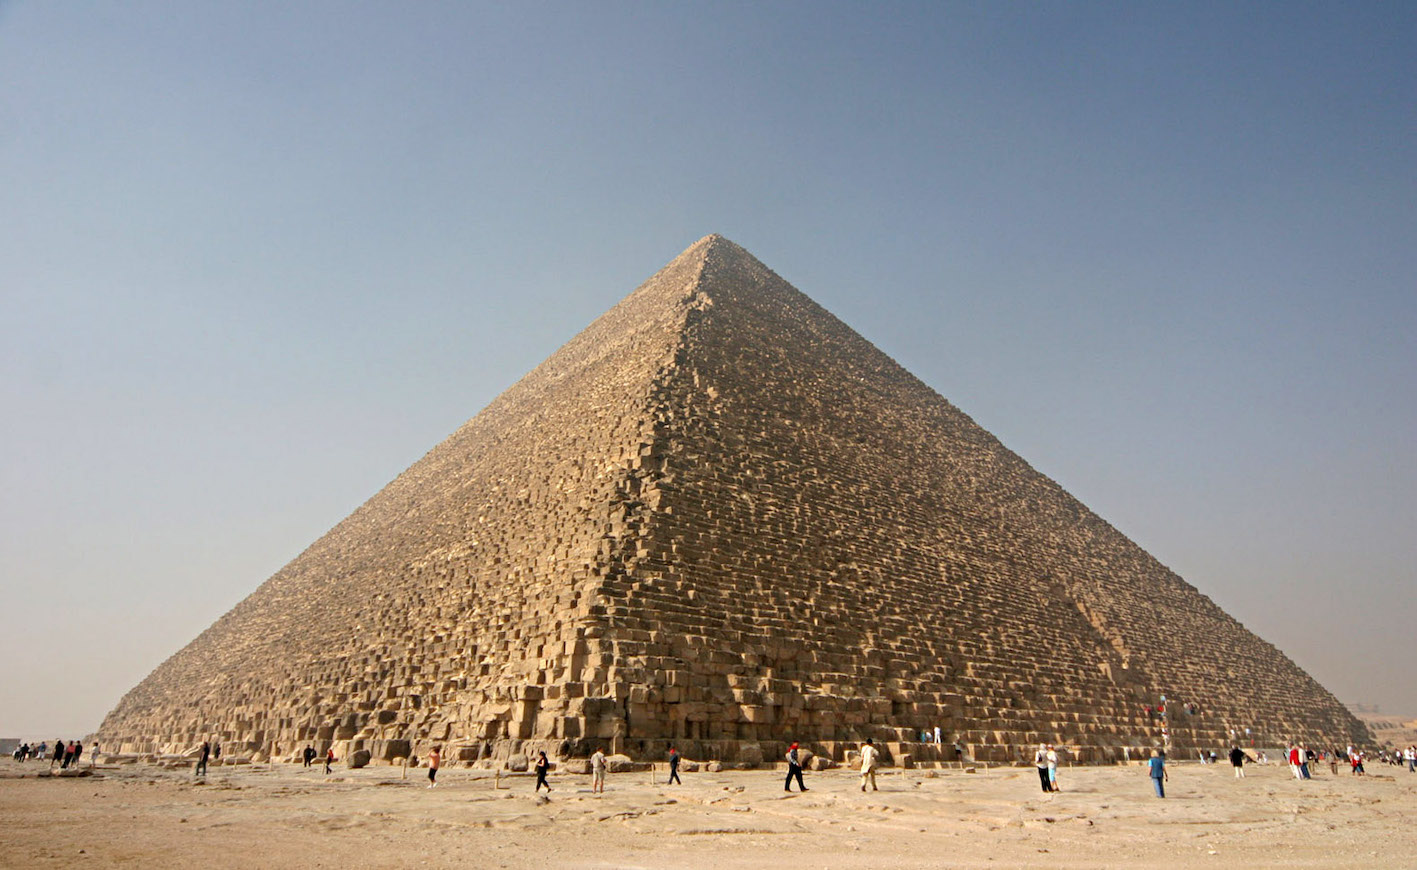 Nina Aldin Thune, Piramide di Cheope in Egitto, fonte Wikipedia CC BY 2.5